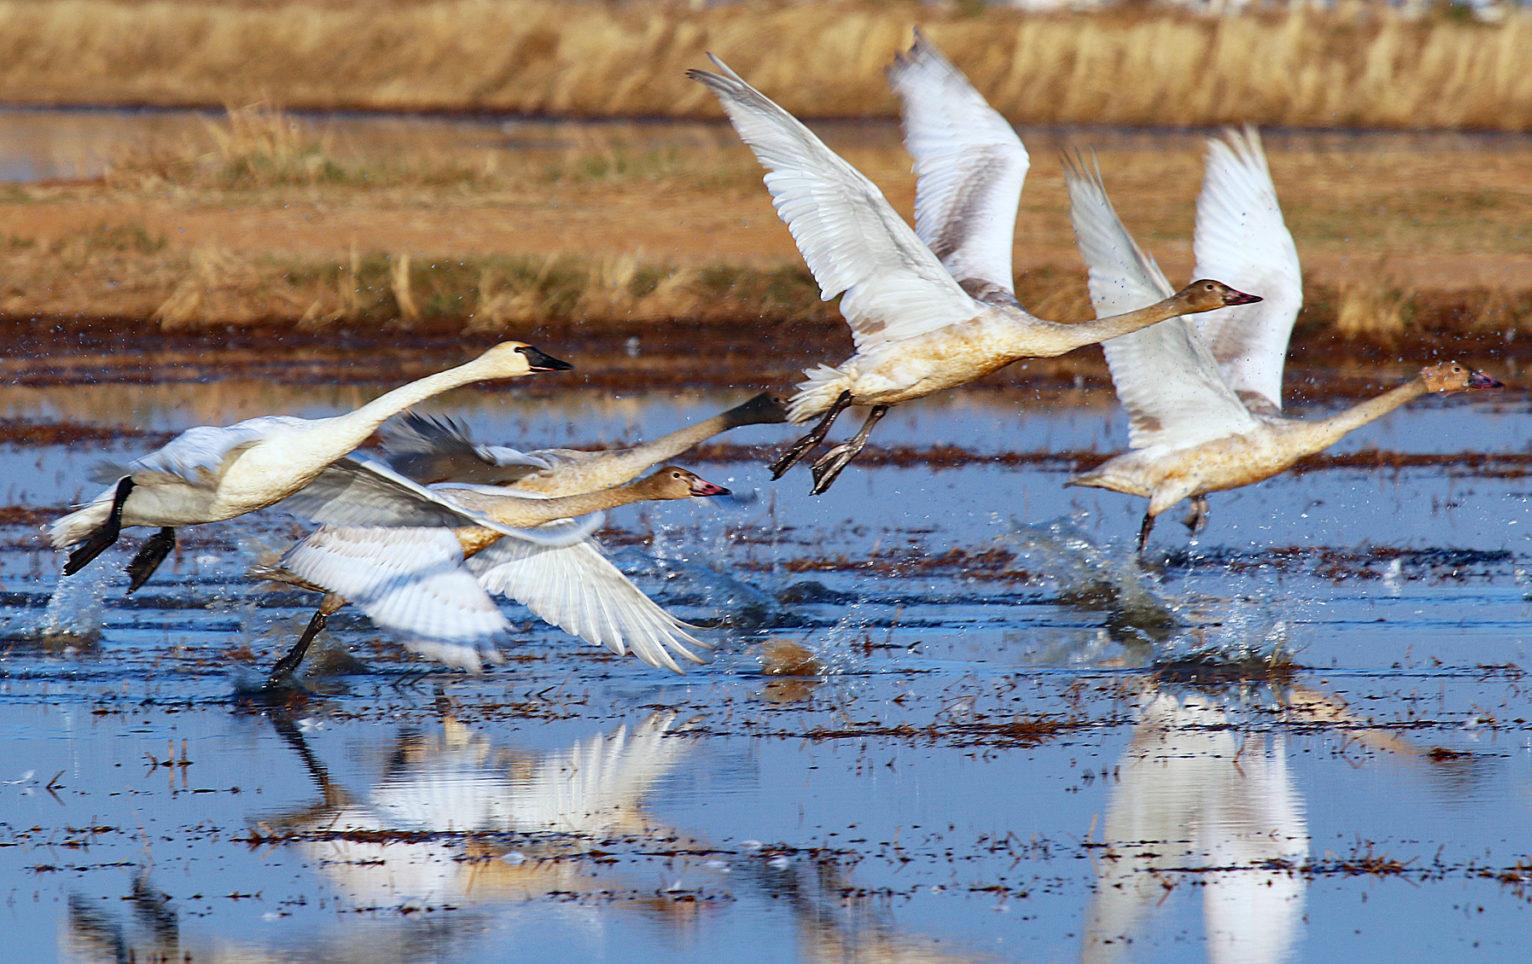 Swan take off near Yuba City, J. Morris photo